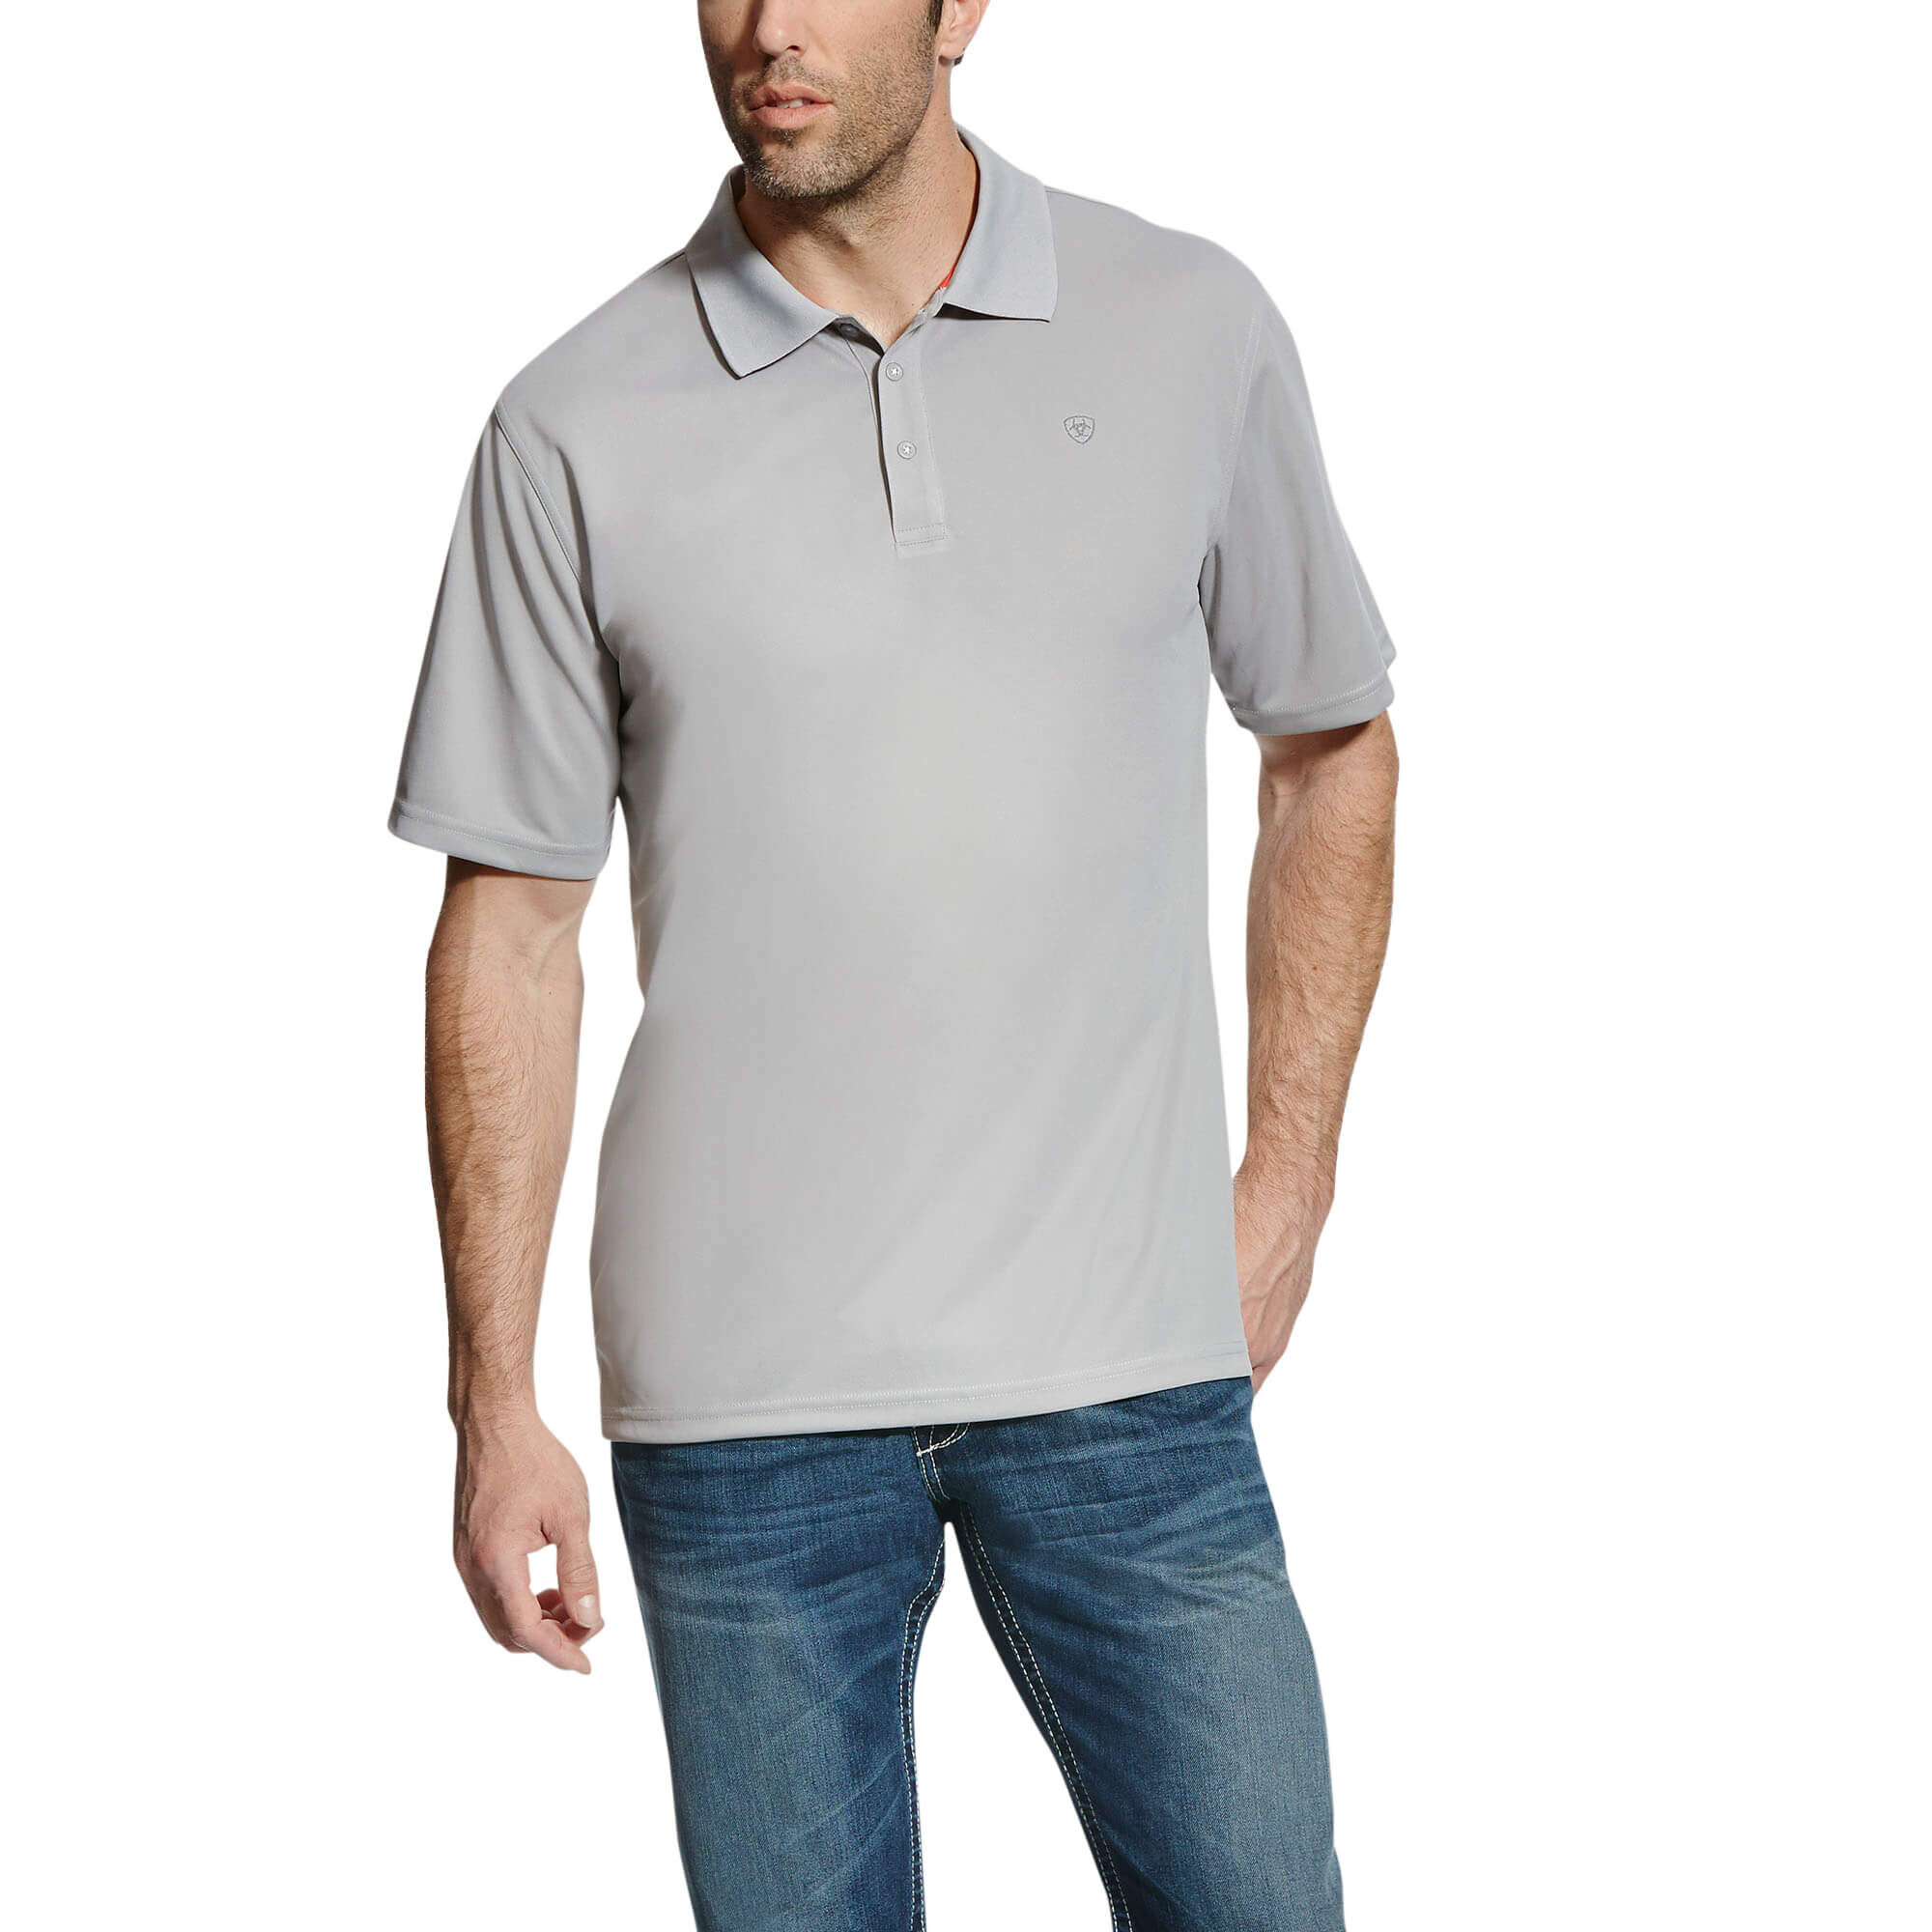 Ariat® Men's Pique TEK Short Sleeve Blackberry Wine Polo Shirt 10034971